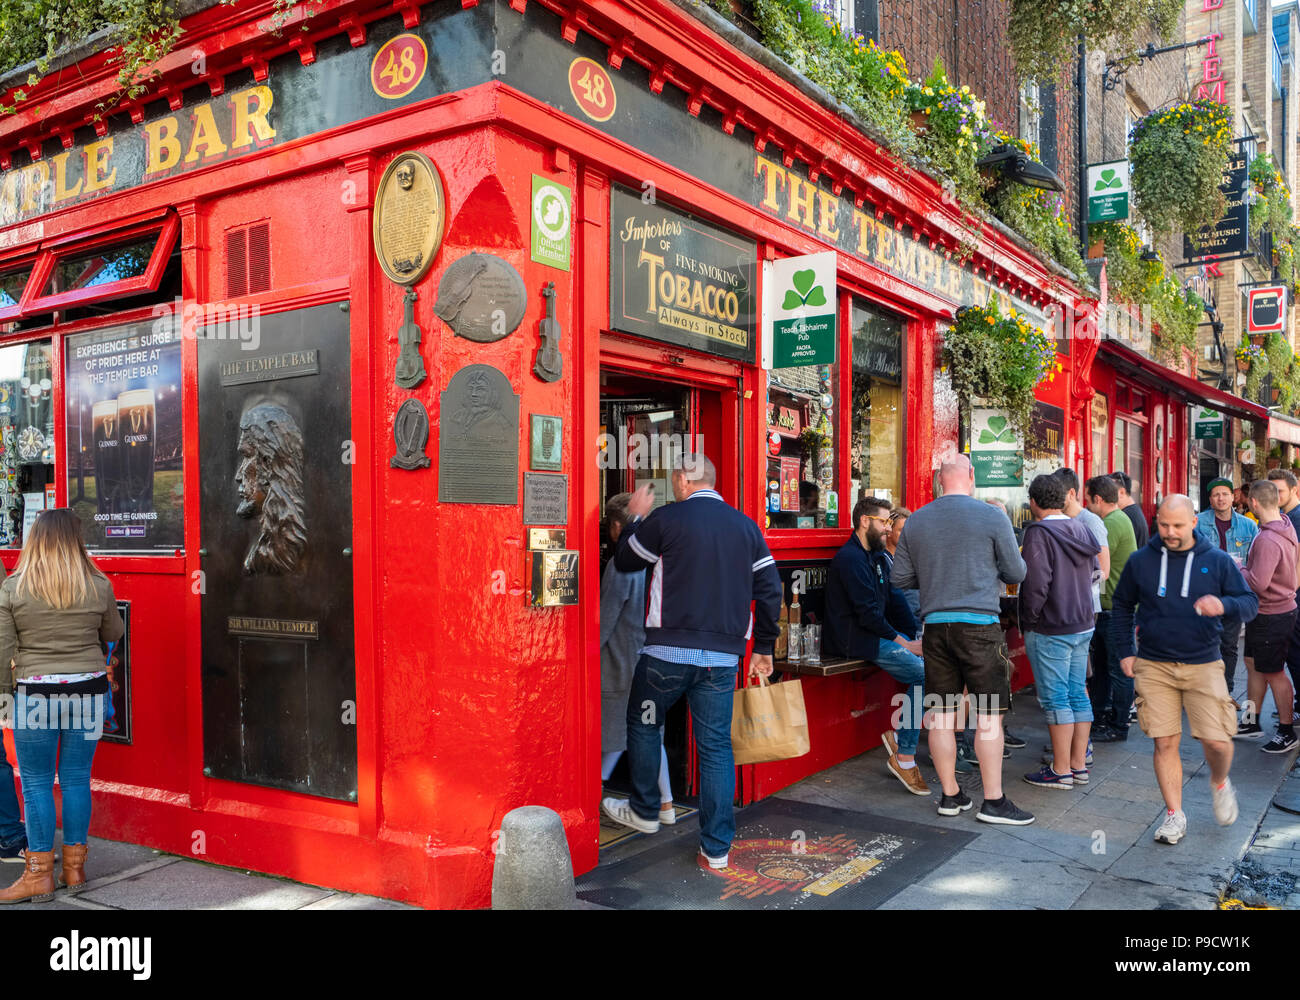 Au pub de Temple Bar Temple bar, trimestre, Dublin, Irlande, Europe Banque D'Images